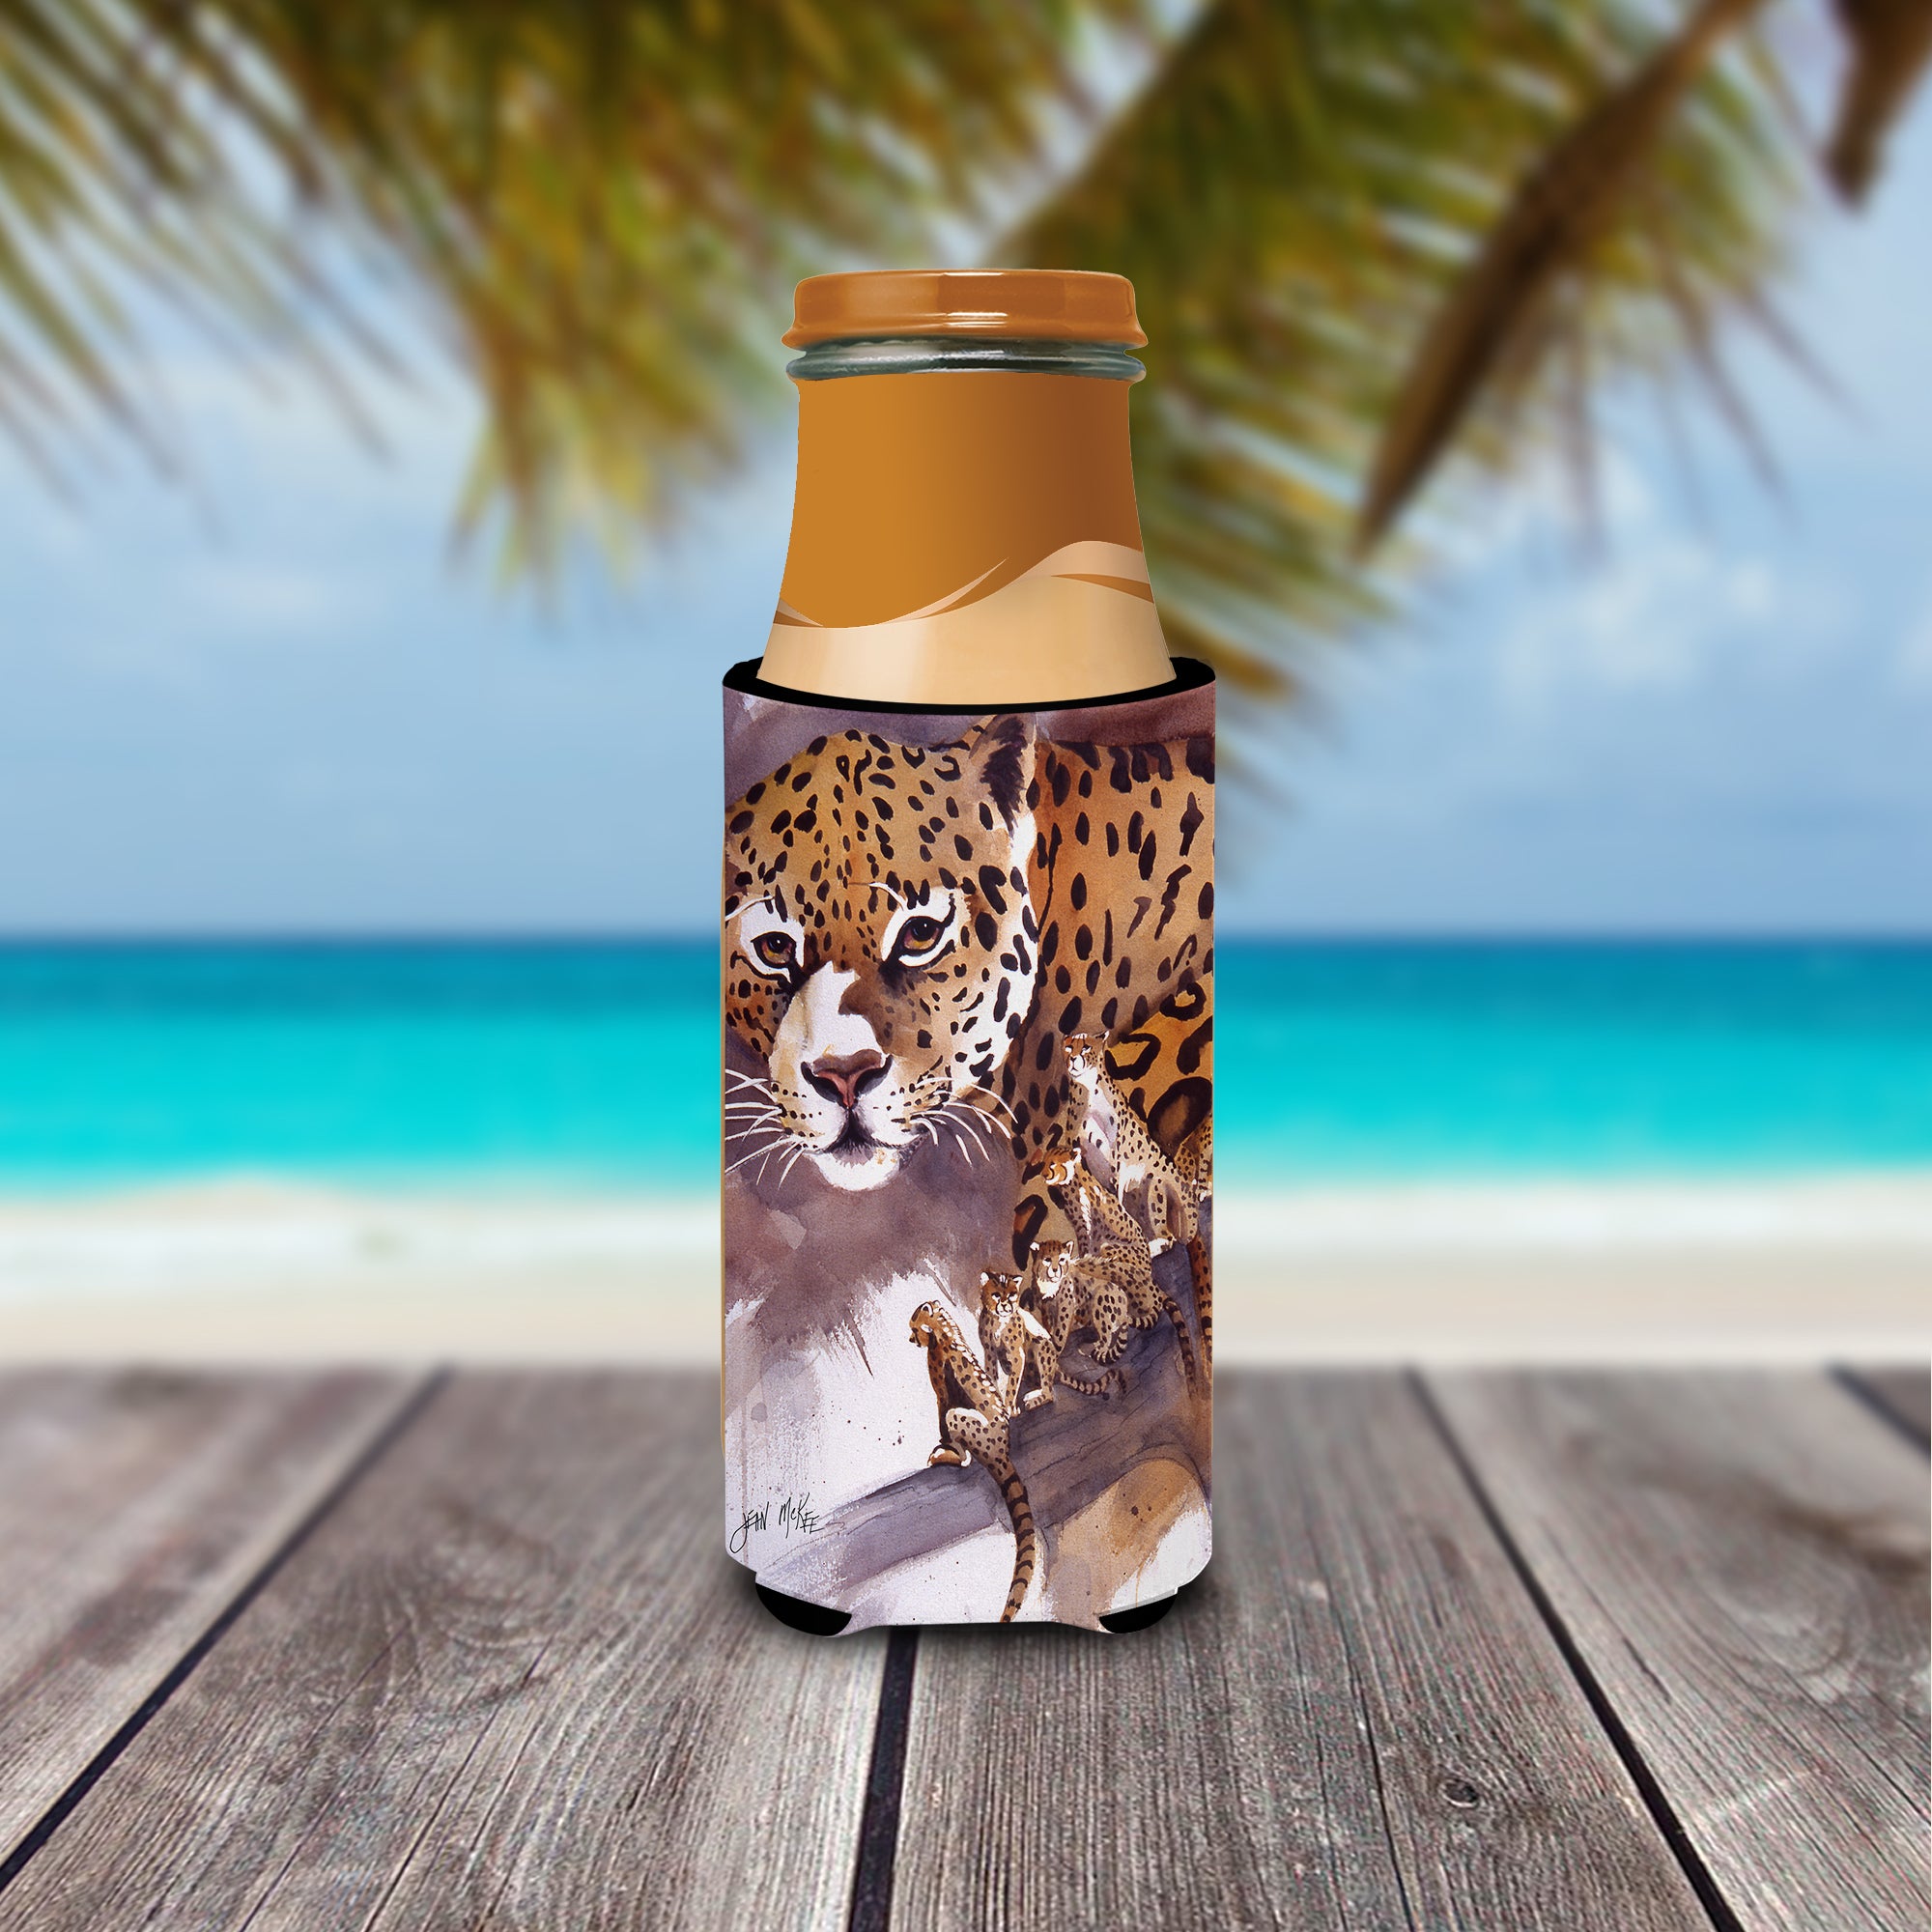 Cheetah Ultra Beverage Insulators for slim cans JMK1193MUK.